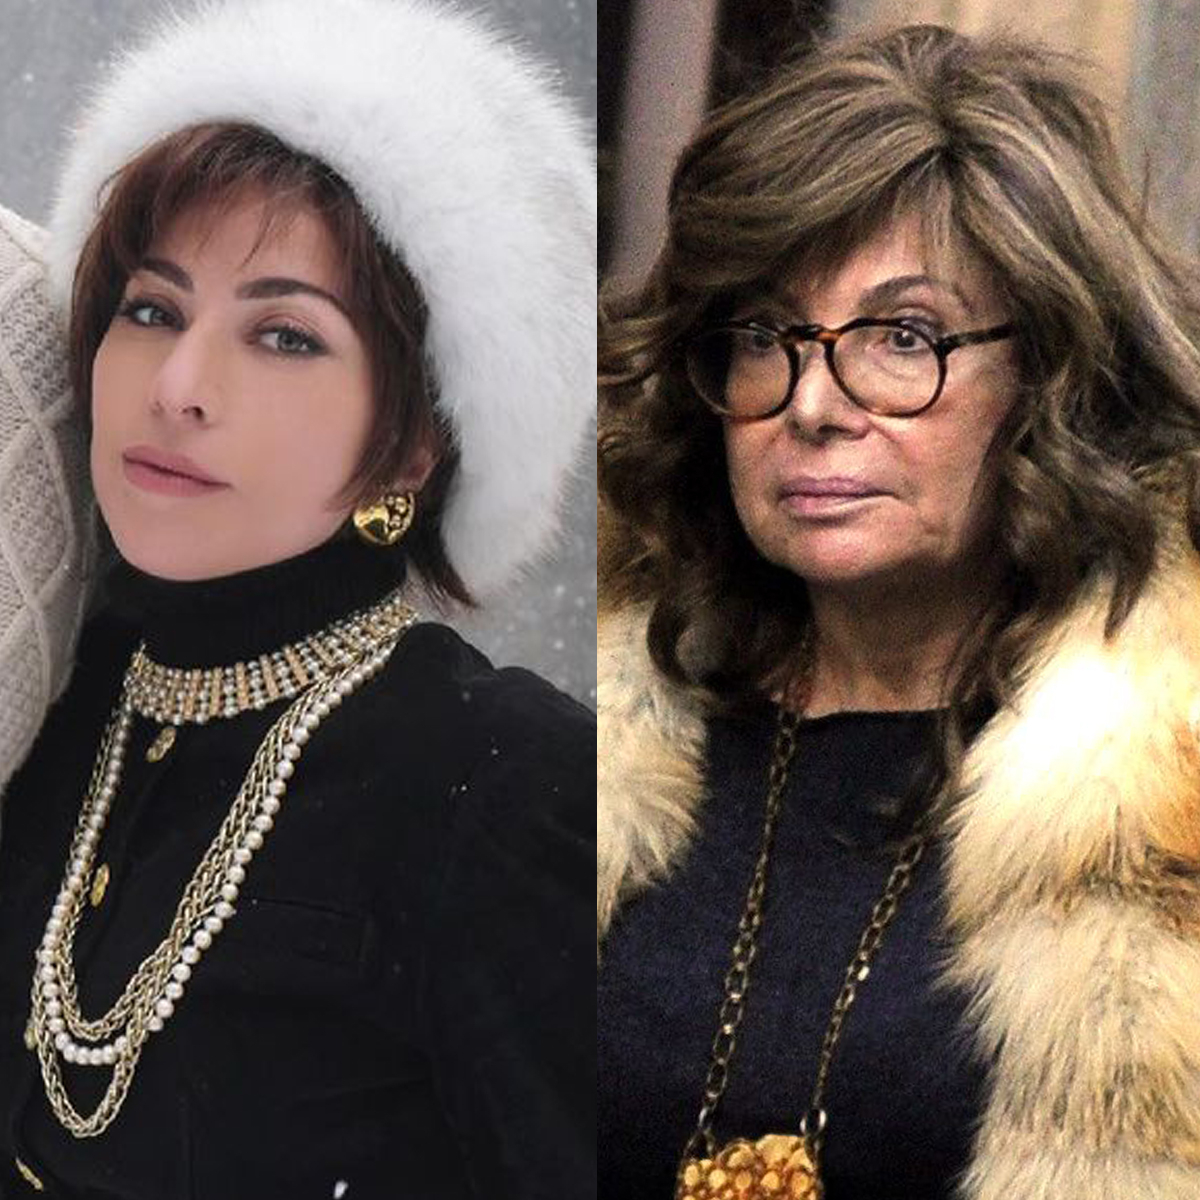 Gucci's Ex Patrizia Reggiani Slams Lady Gaga & House of Gucci - E! Online